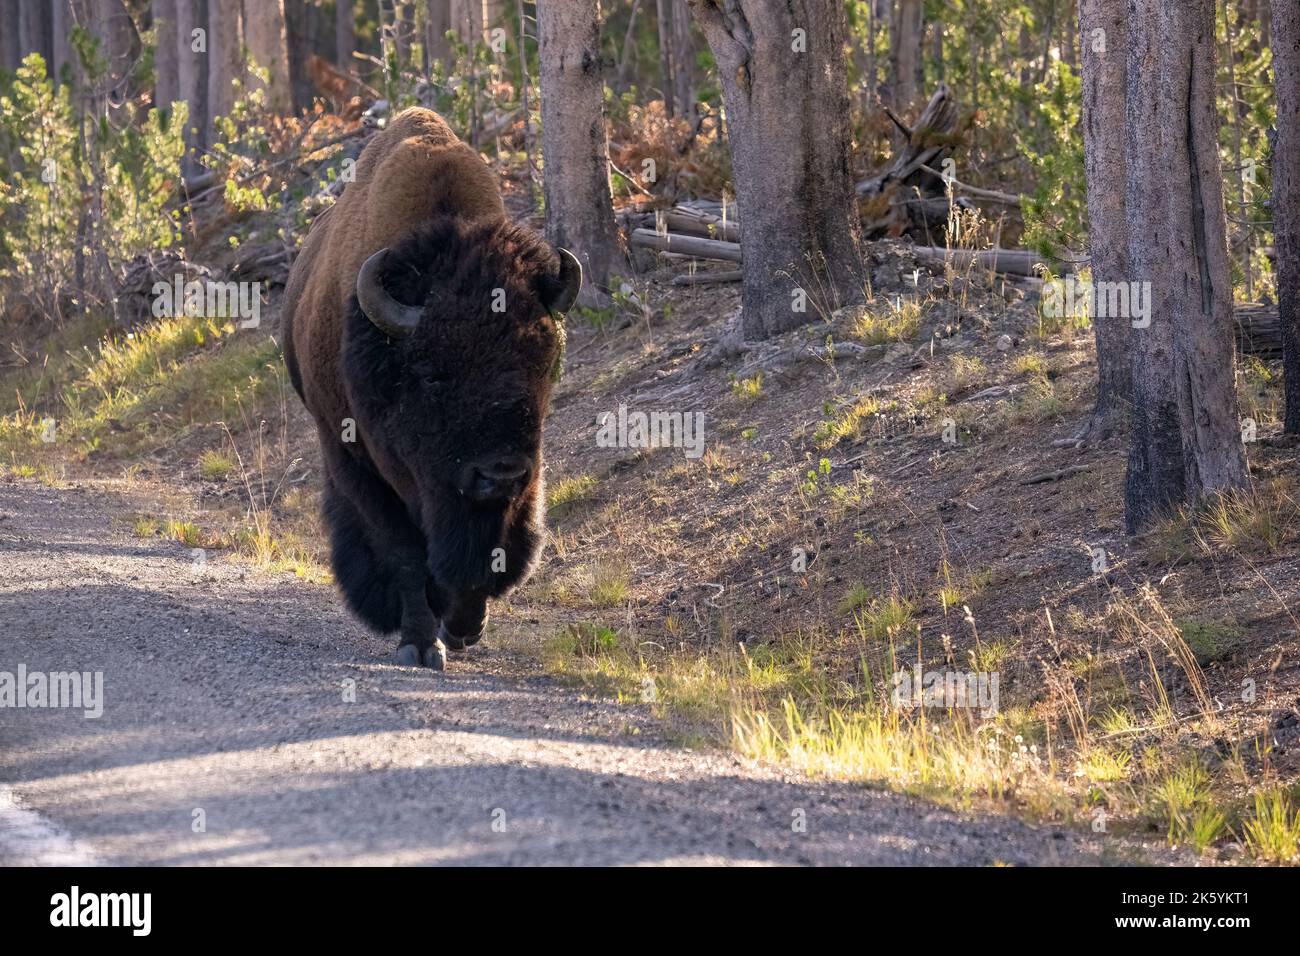 Parc national de Yellowstone, Wyoming, États-Unis. Bison marchant sur une route Banque D'Images